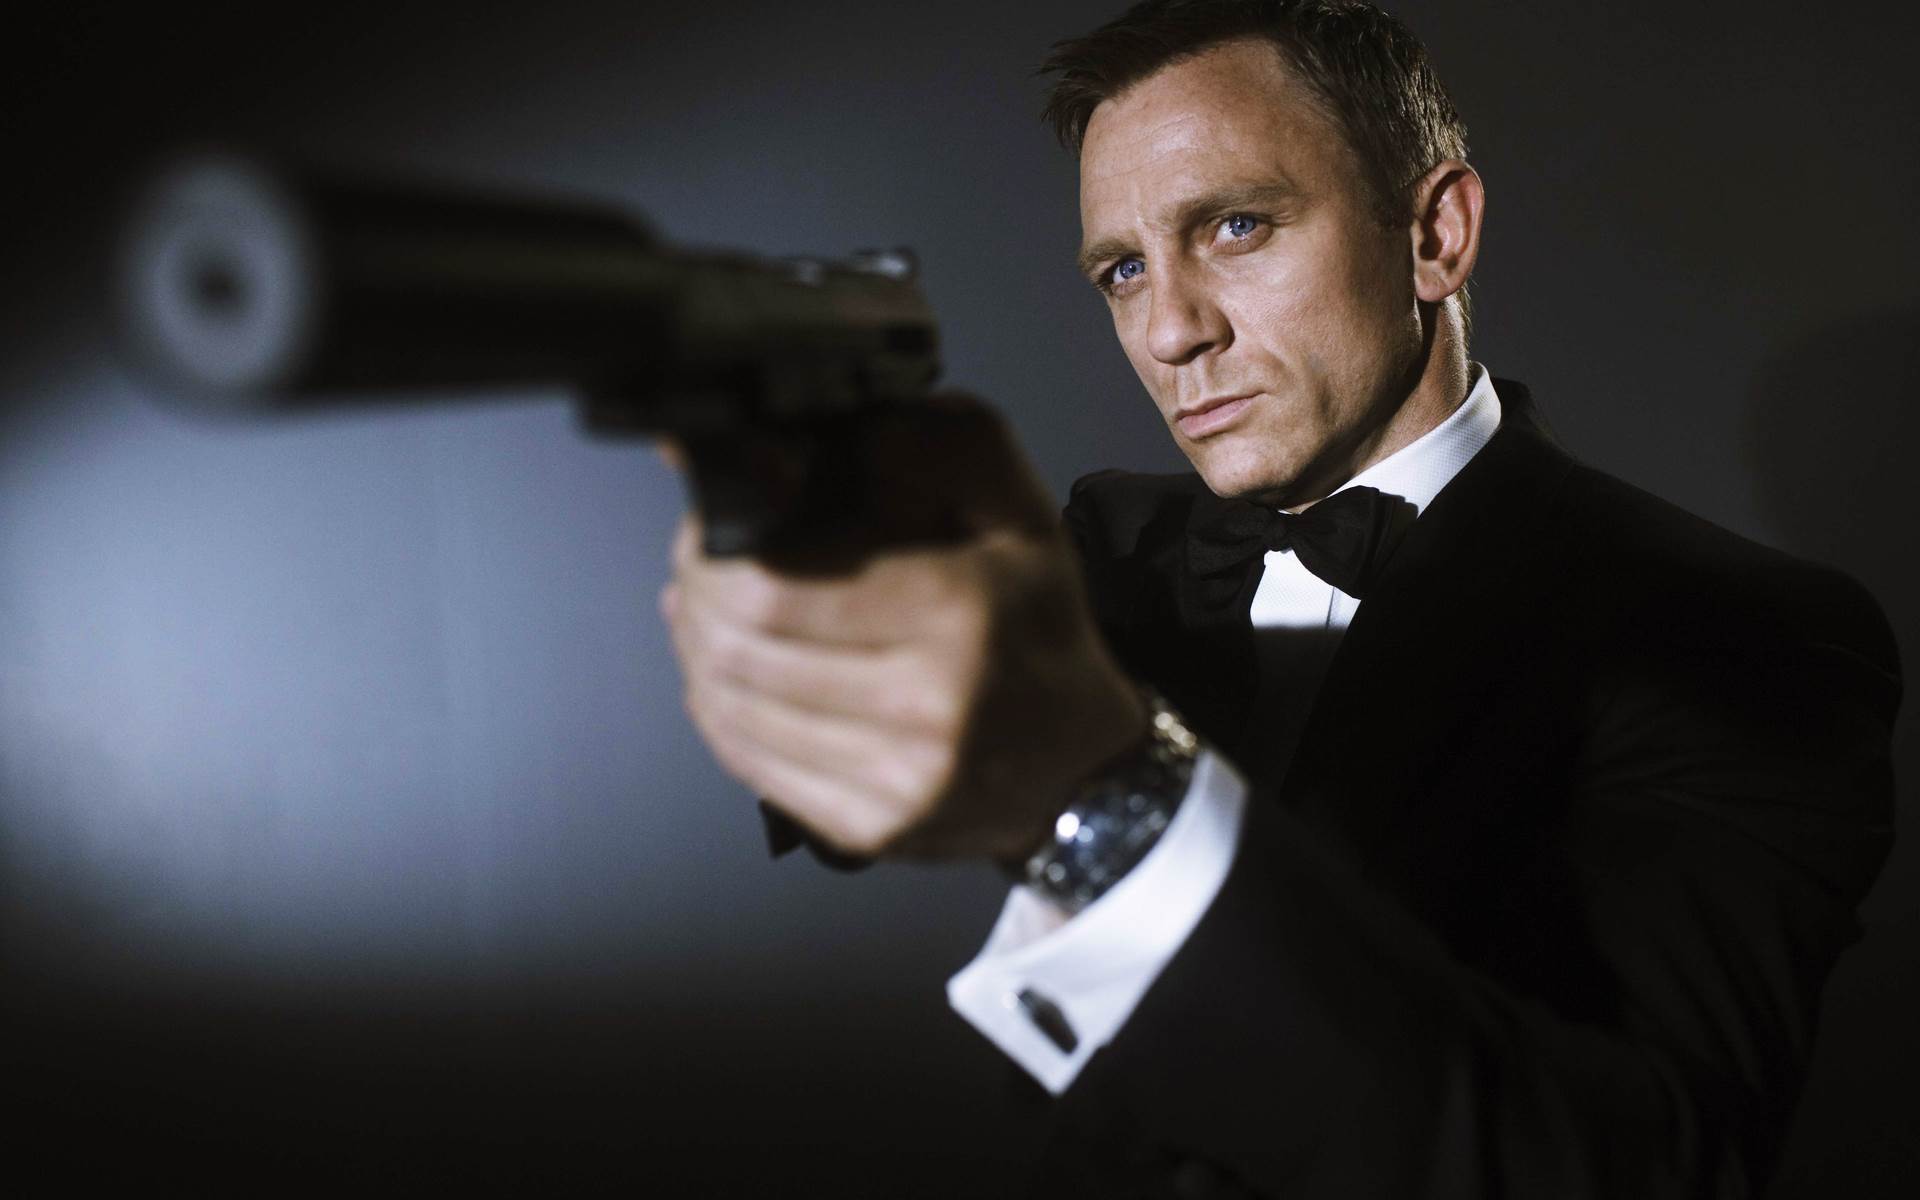 Daniel Craig, o 007, aparece como herói de X-Men em imagem; veja